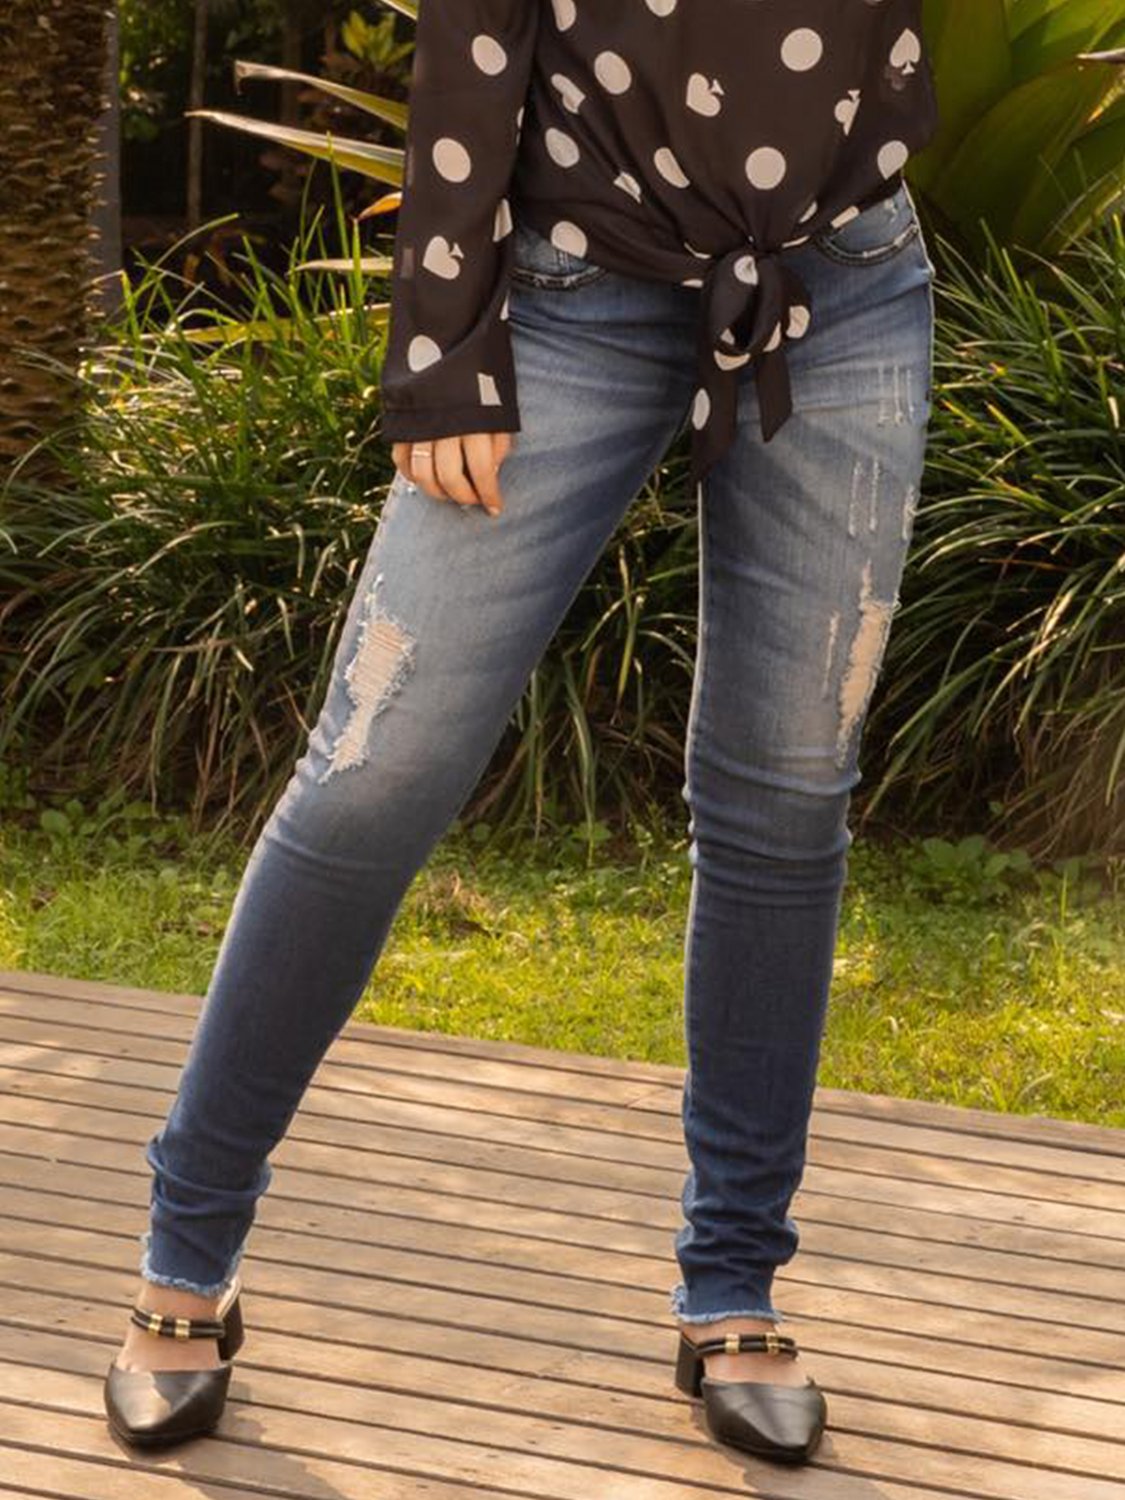 Calça Jeans Skinny Feminina Destroyed - Compre agora